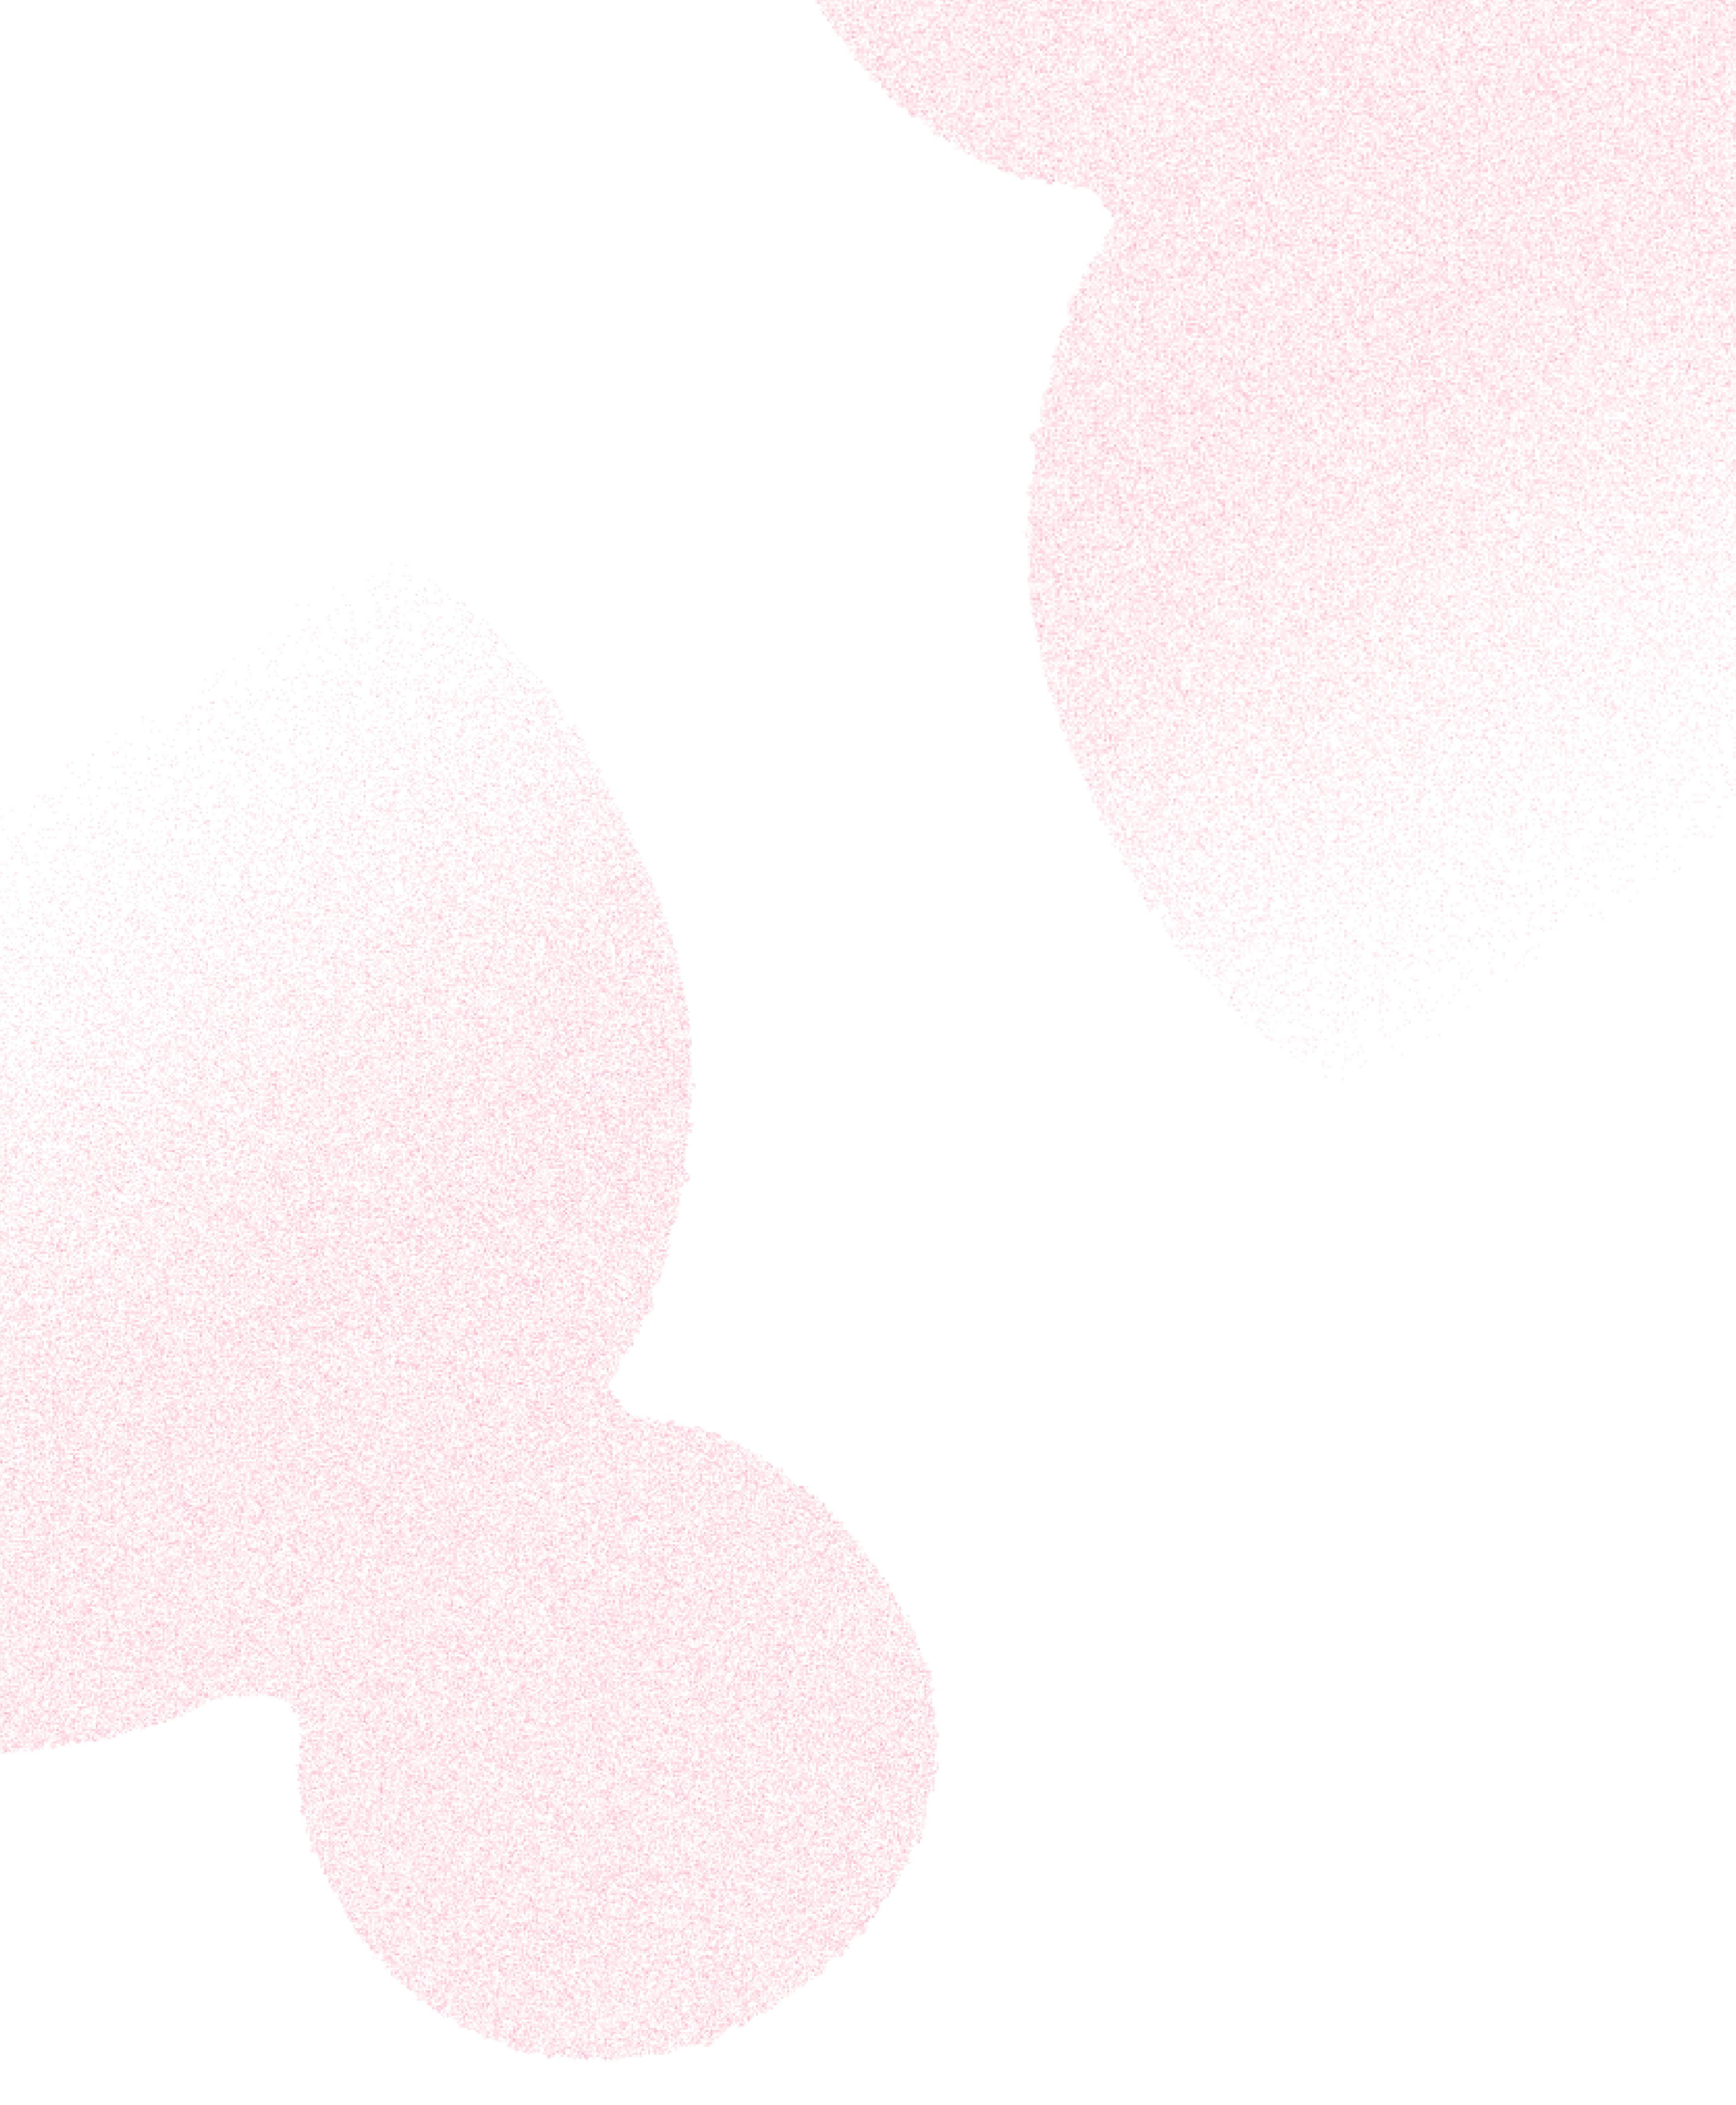 Pink cloud-like shapes